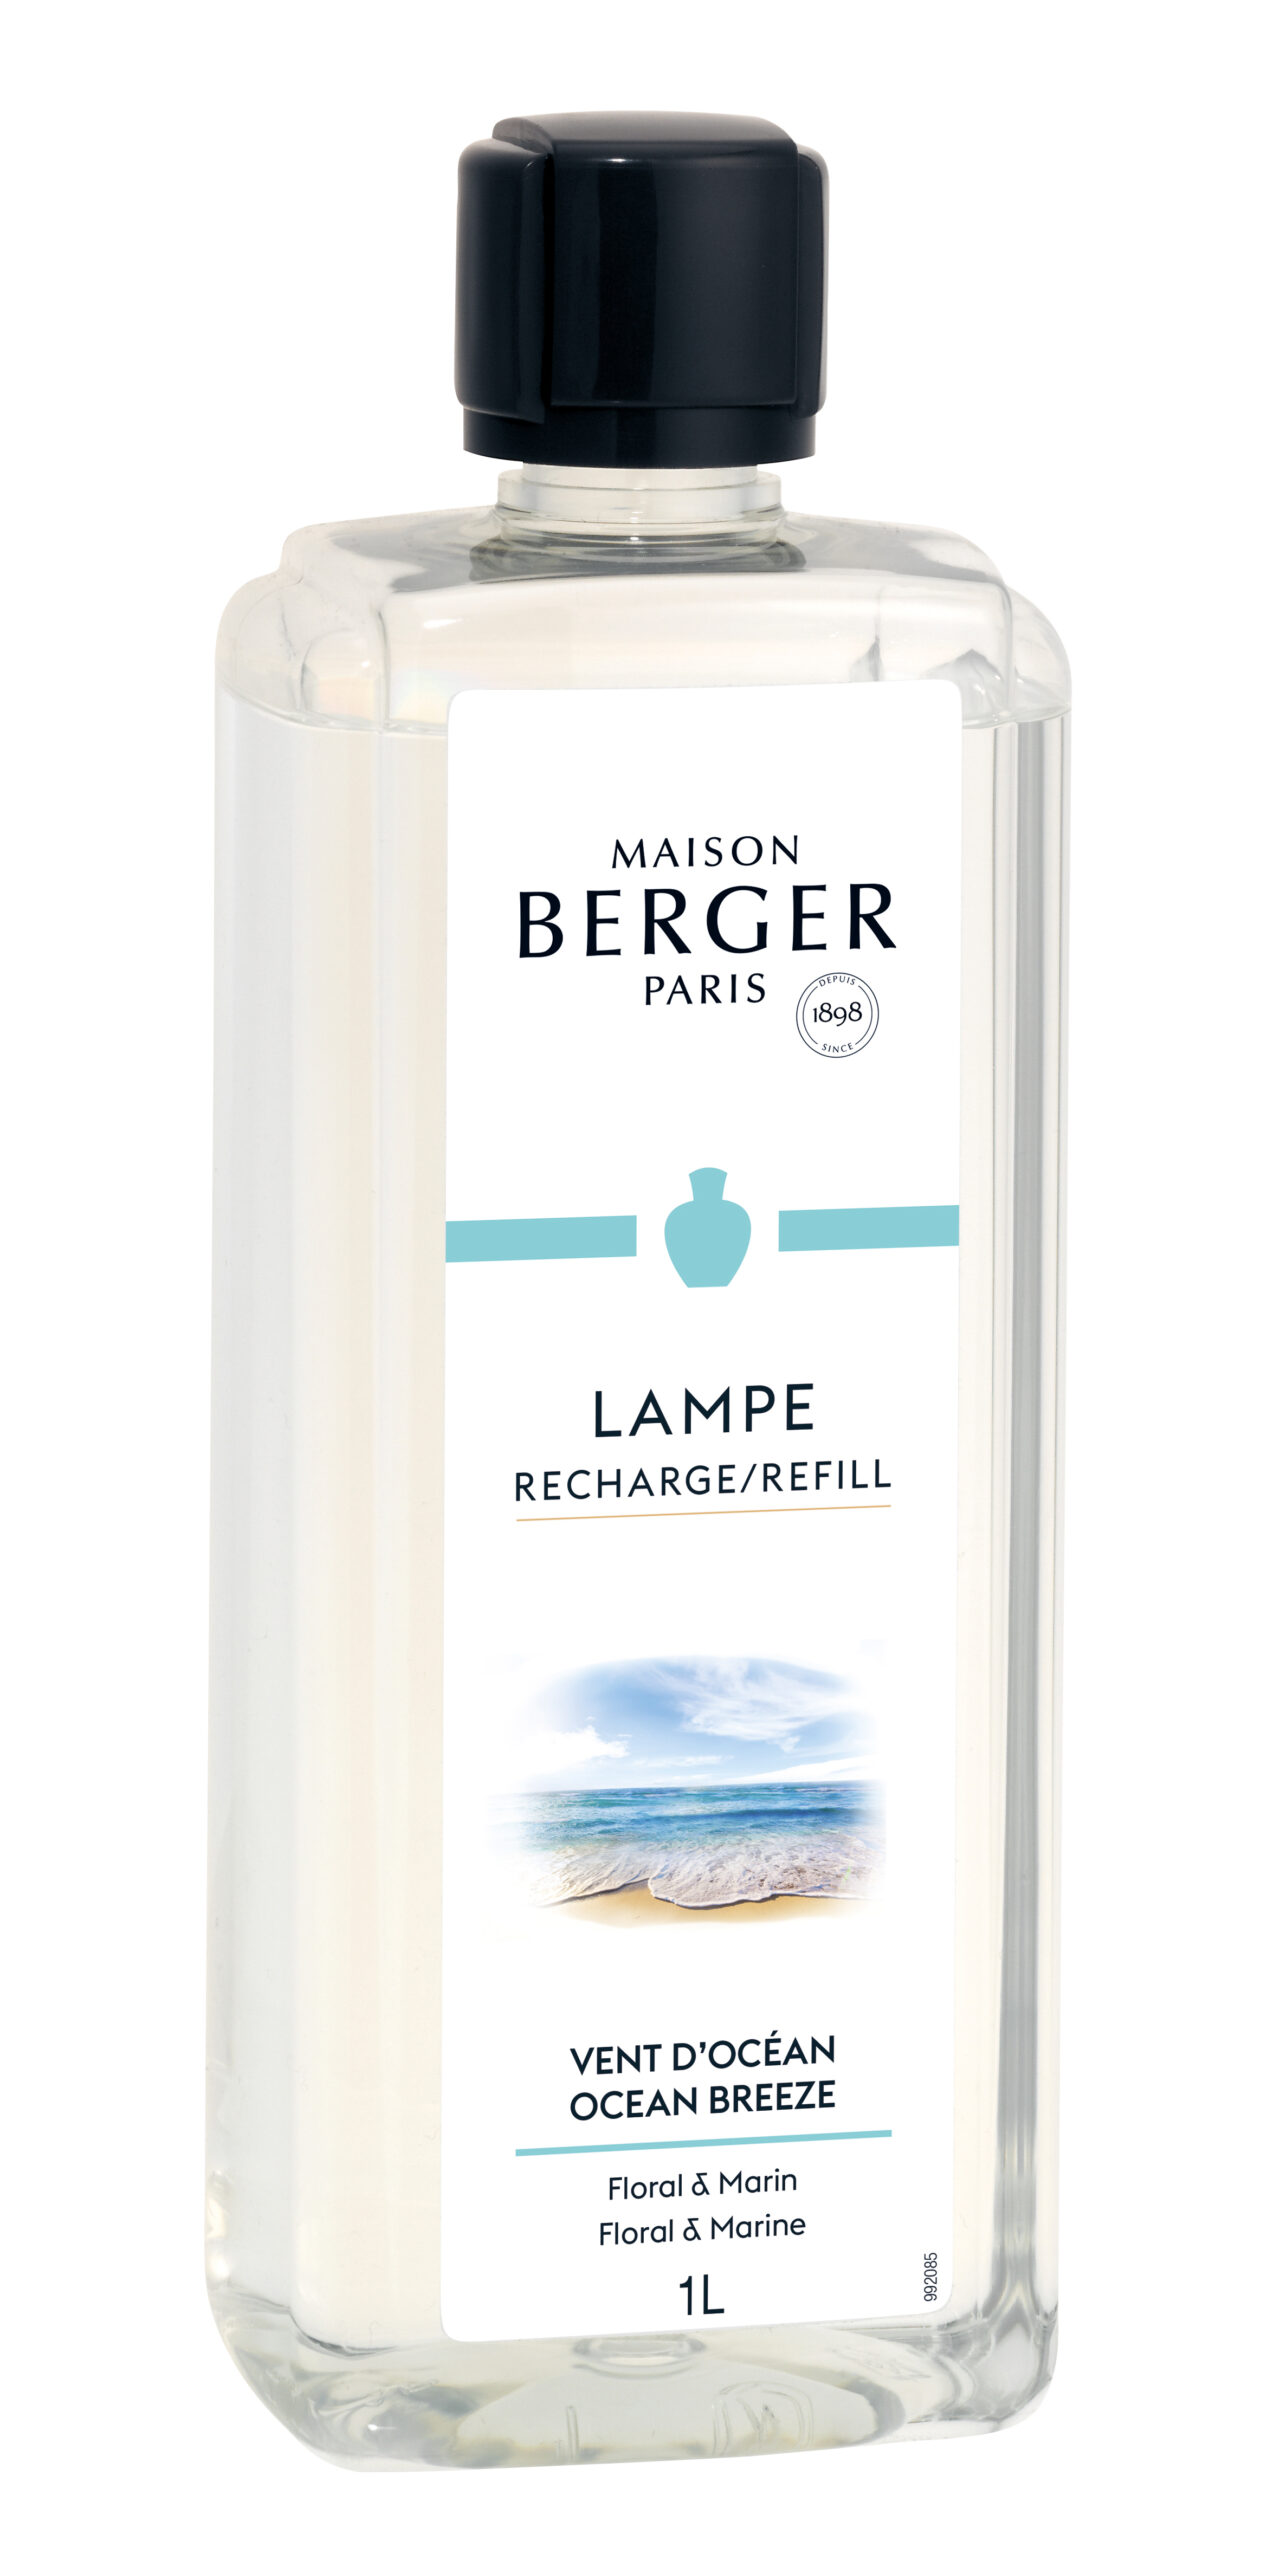 Maison Berger Paris - parfum Ocean Breeze - 1 liter